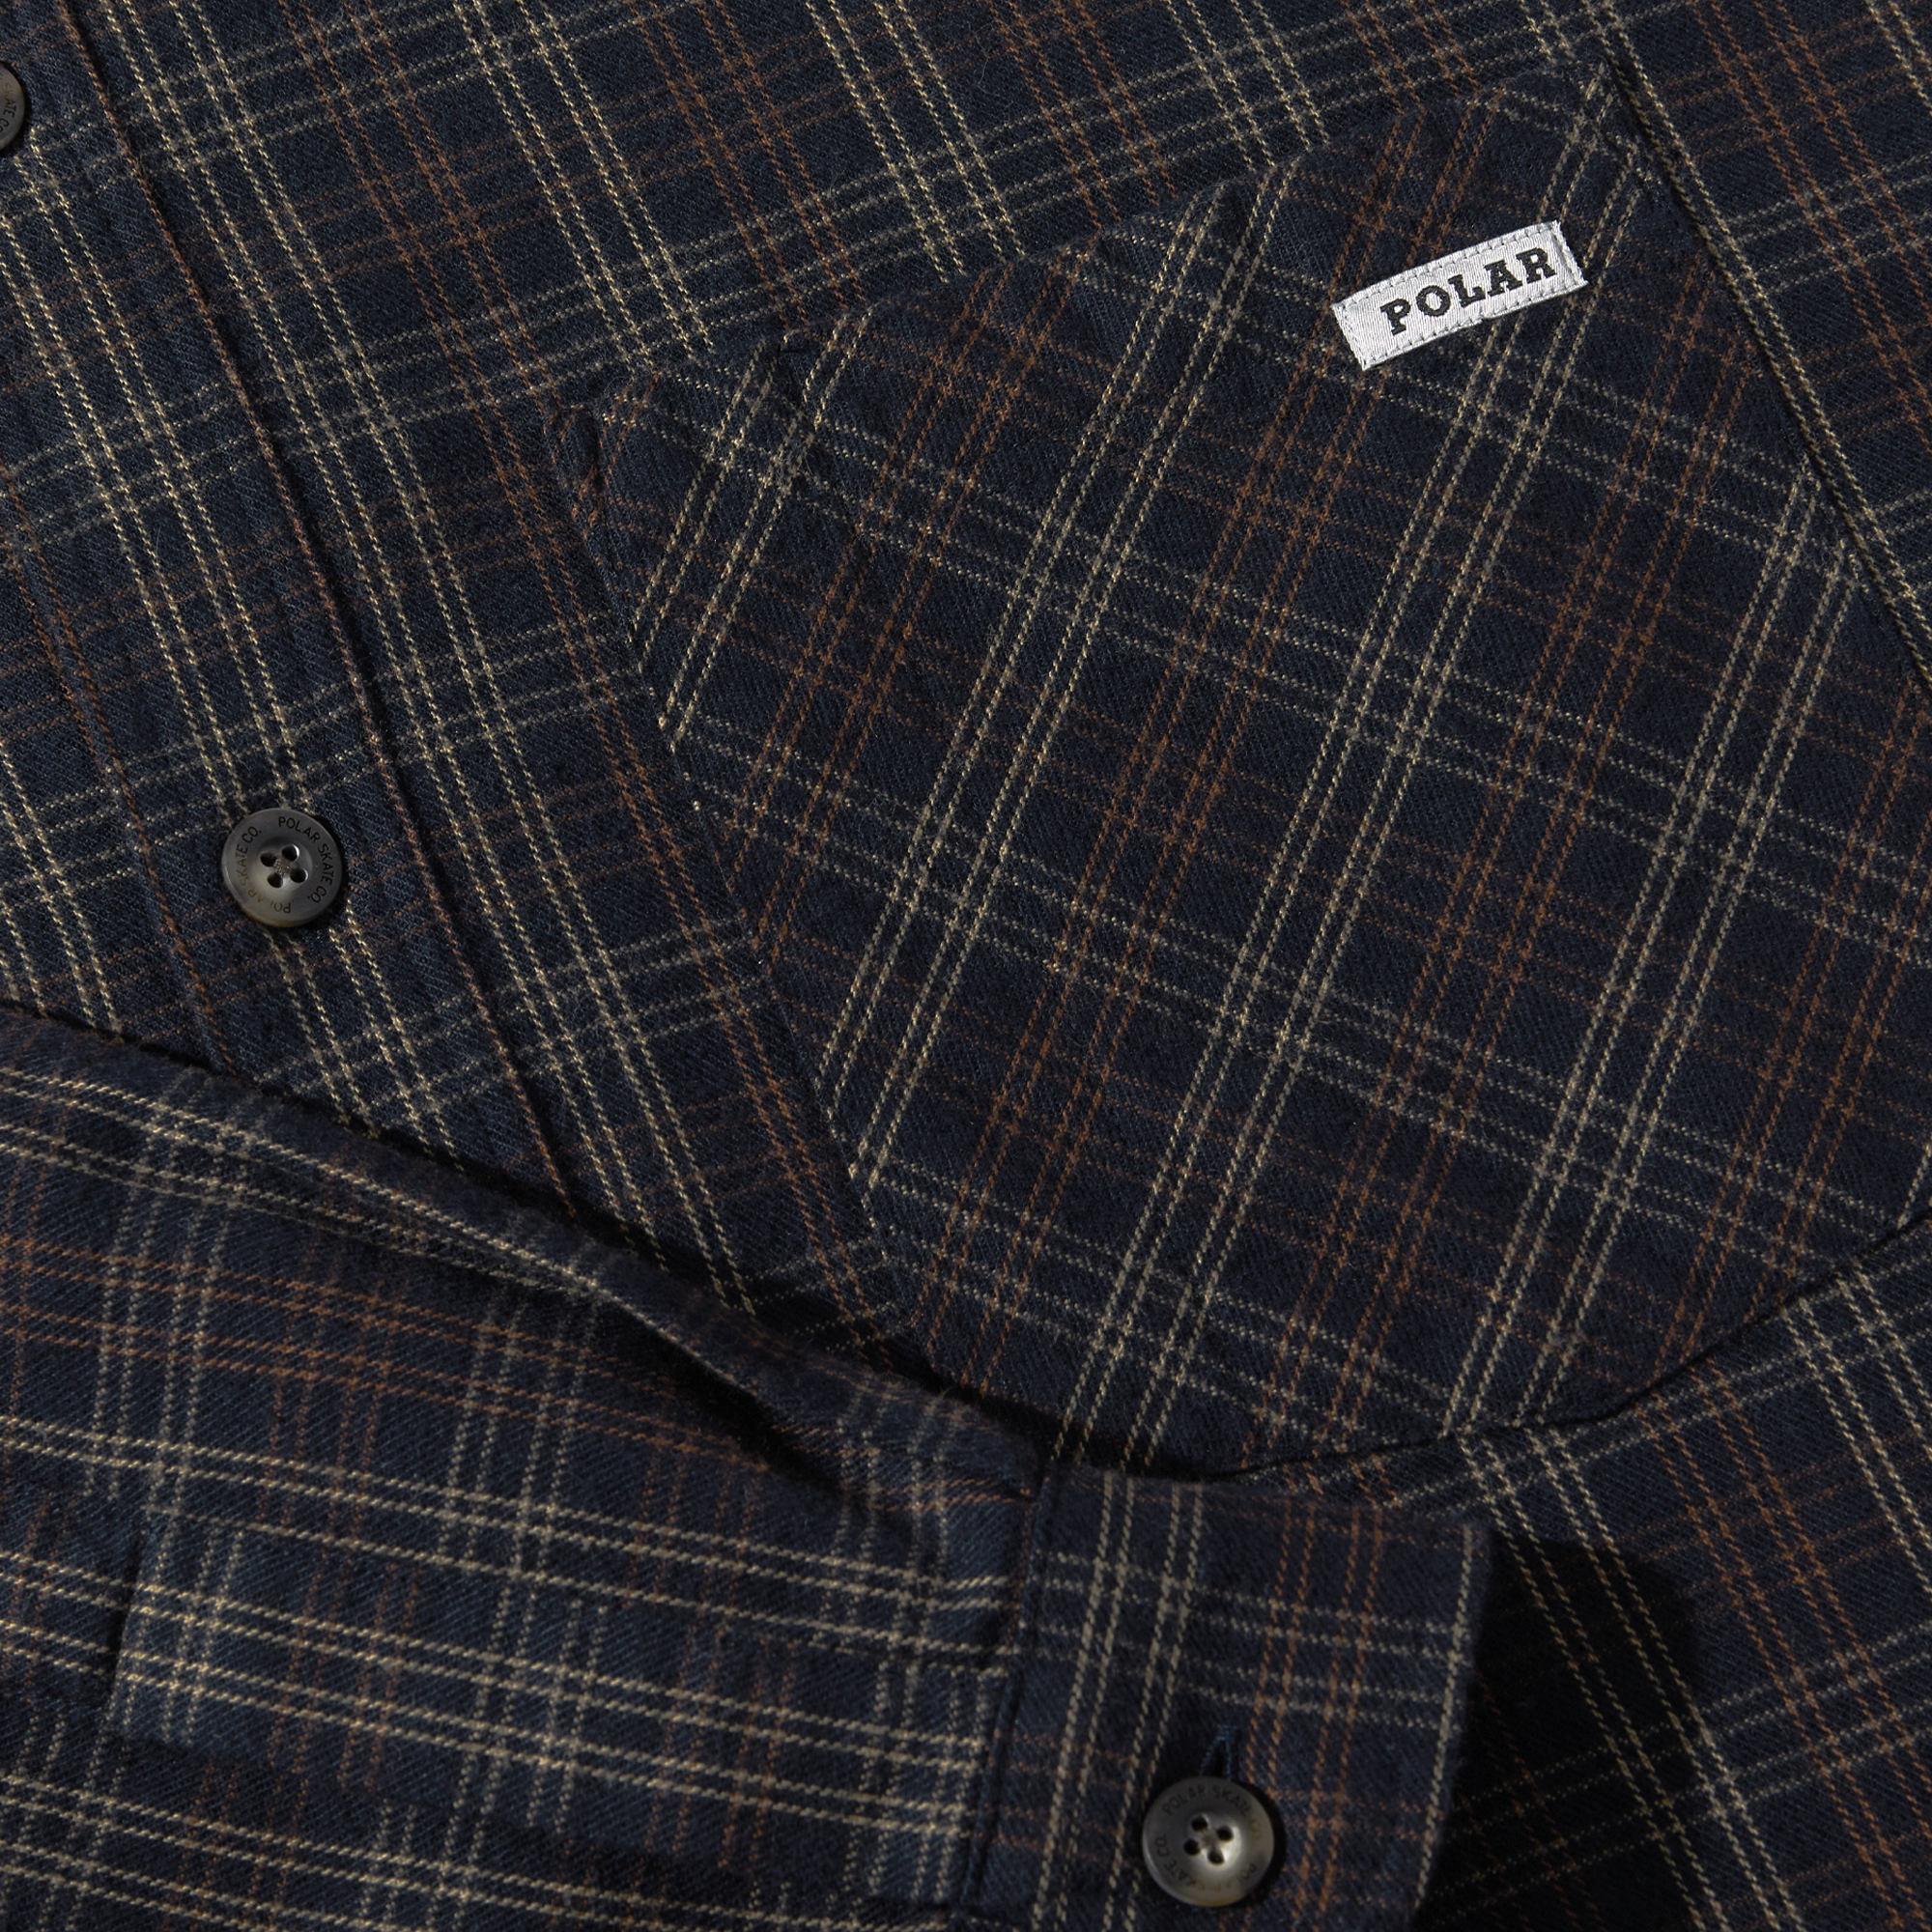 POLAR - Mitchell LS Shirt Flannel "Navy / Brown"